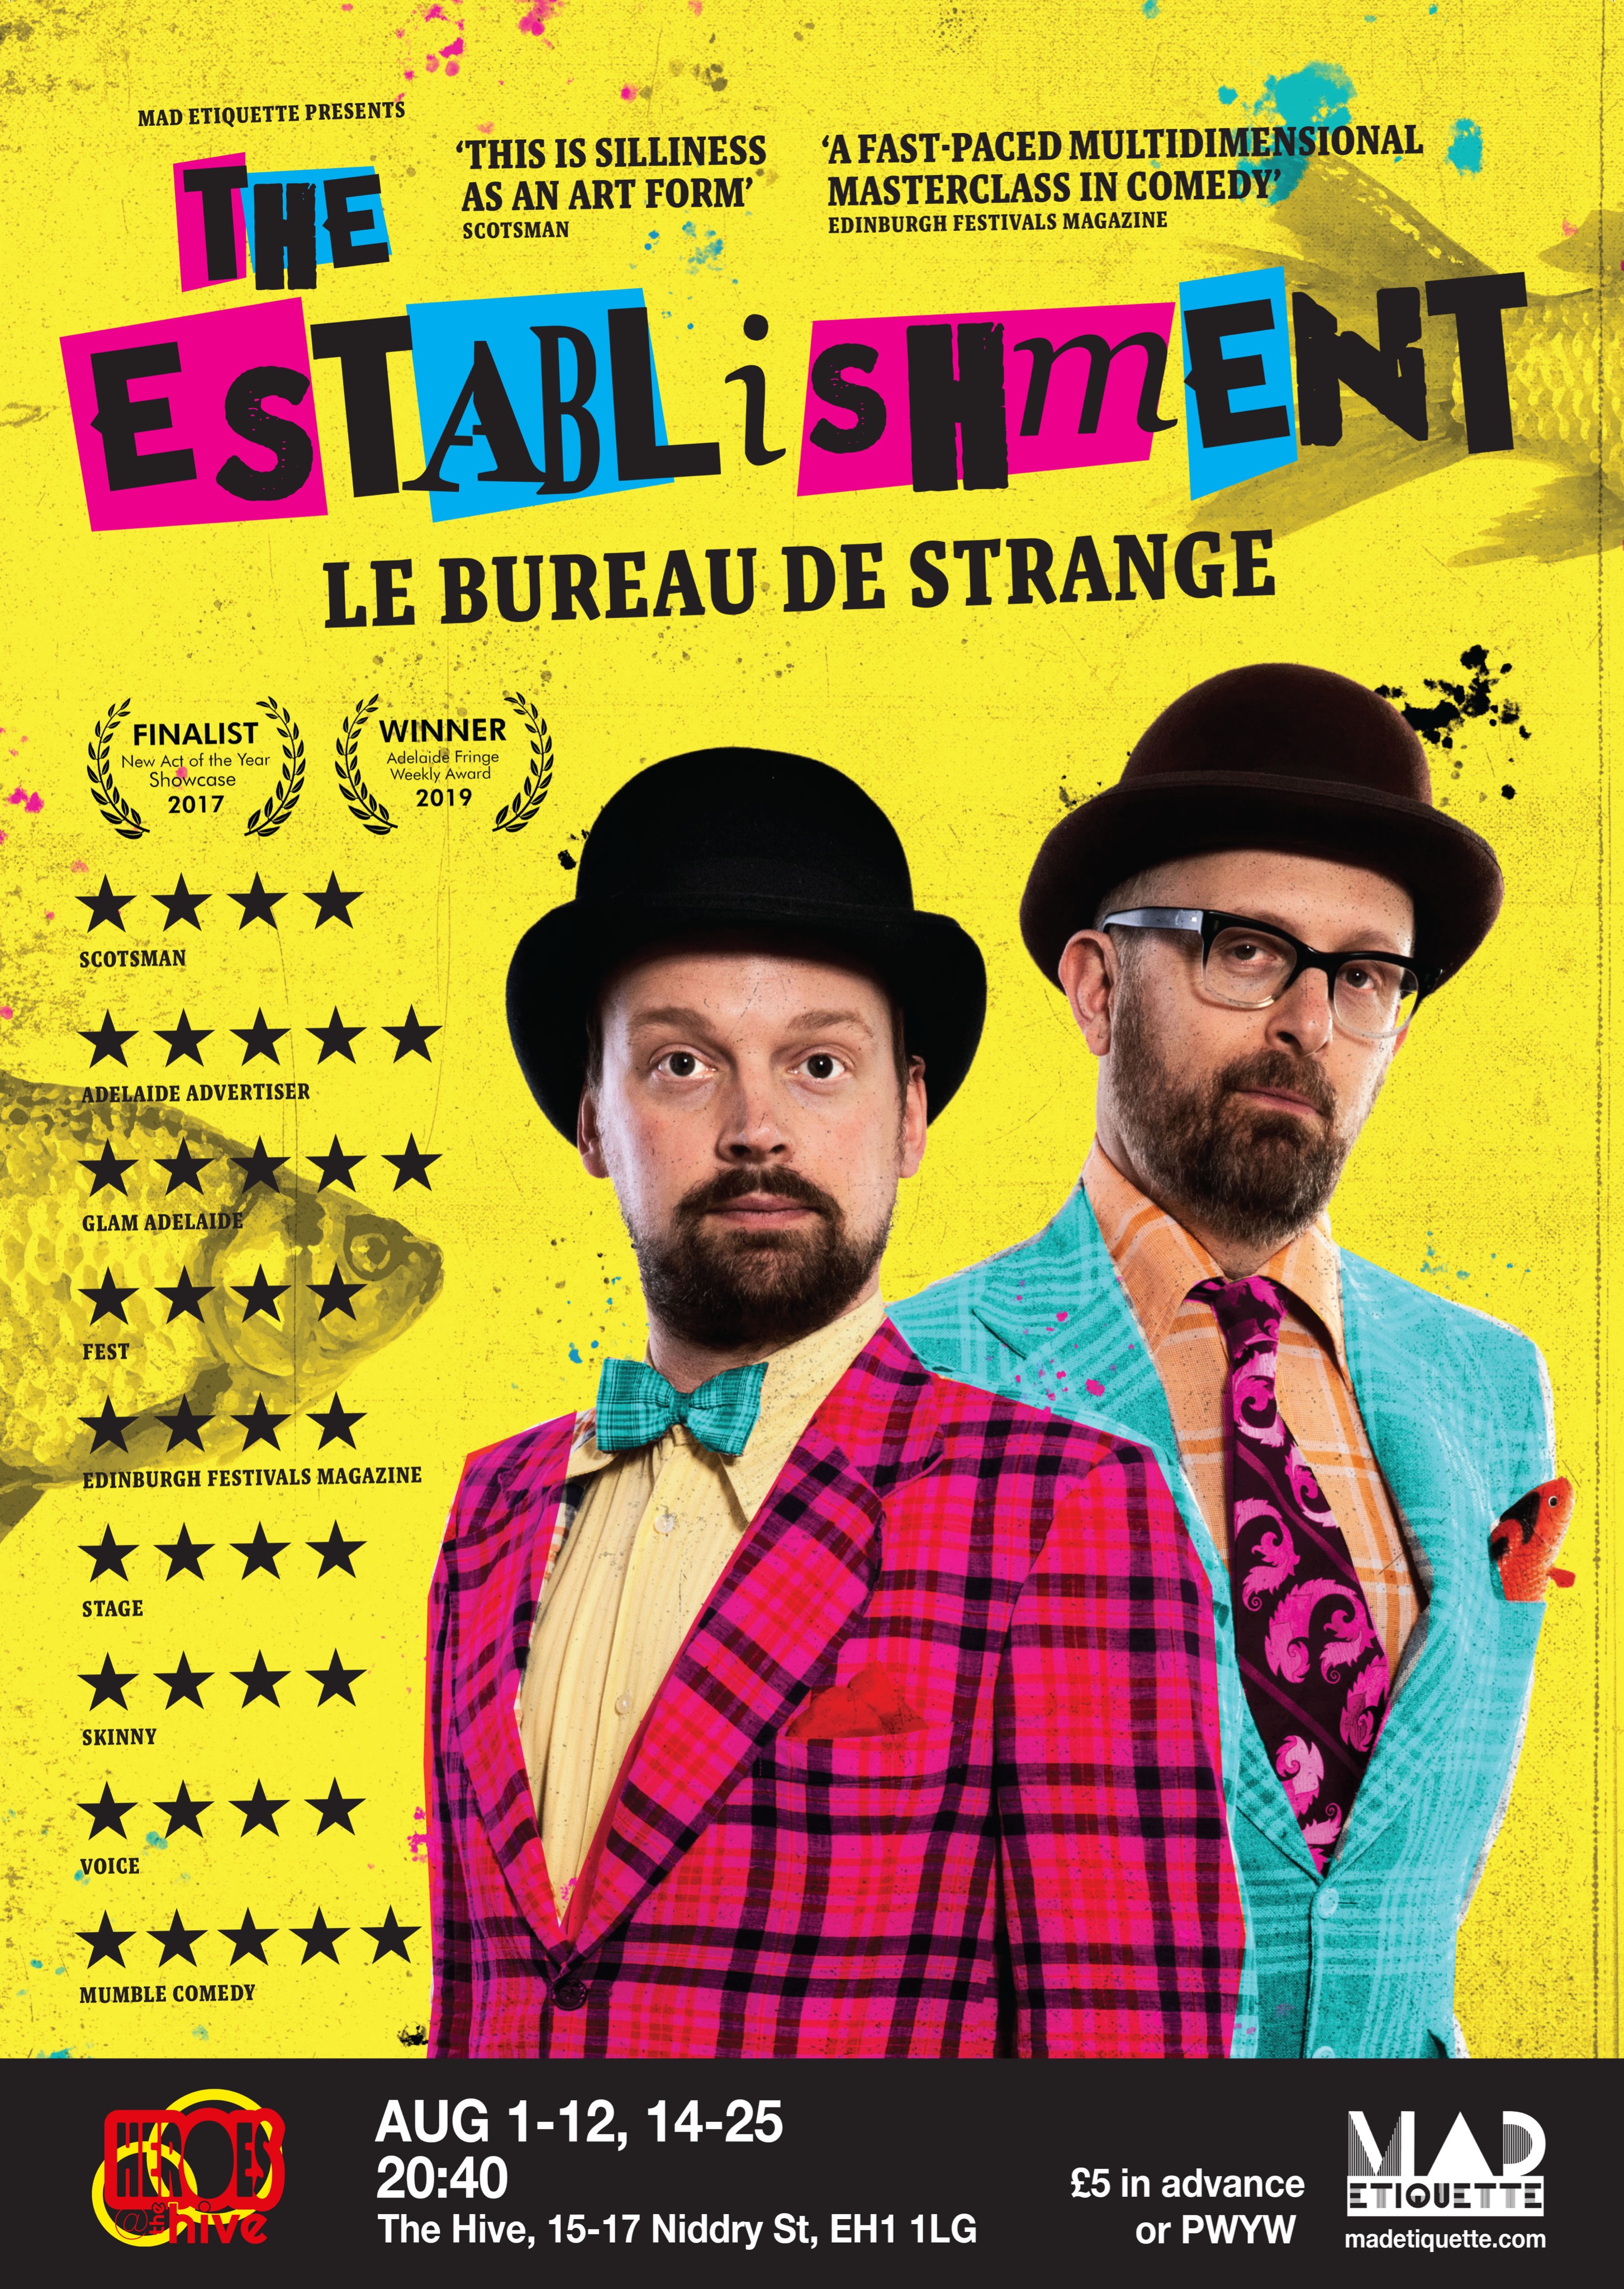 The poster for The Establishment: Le Bureau de Strange